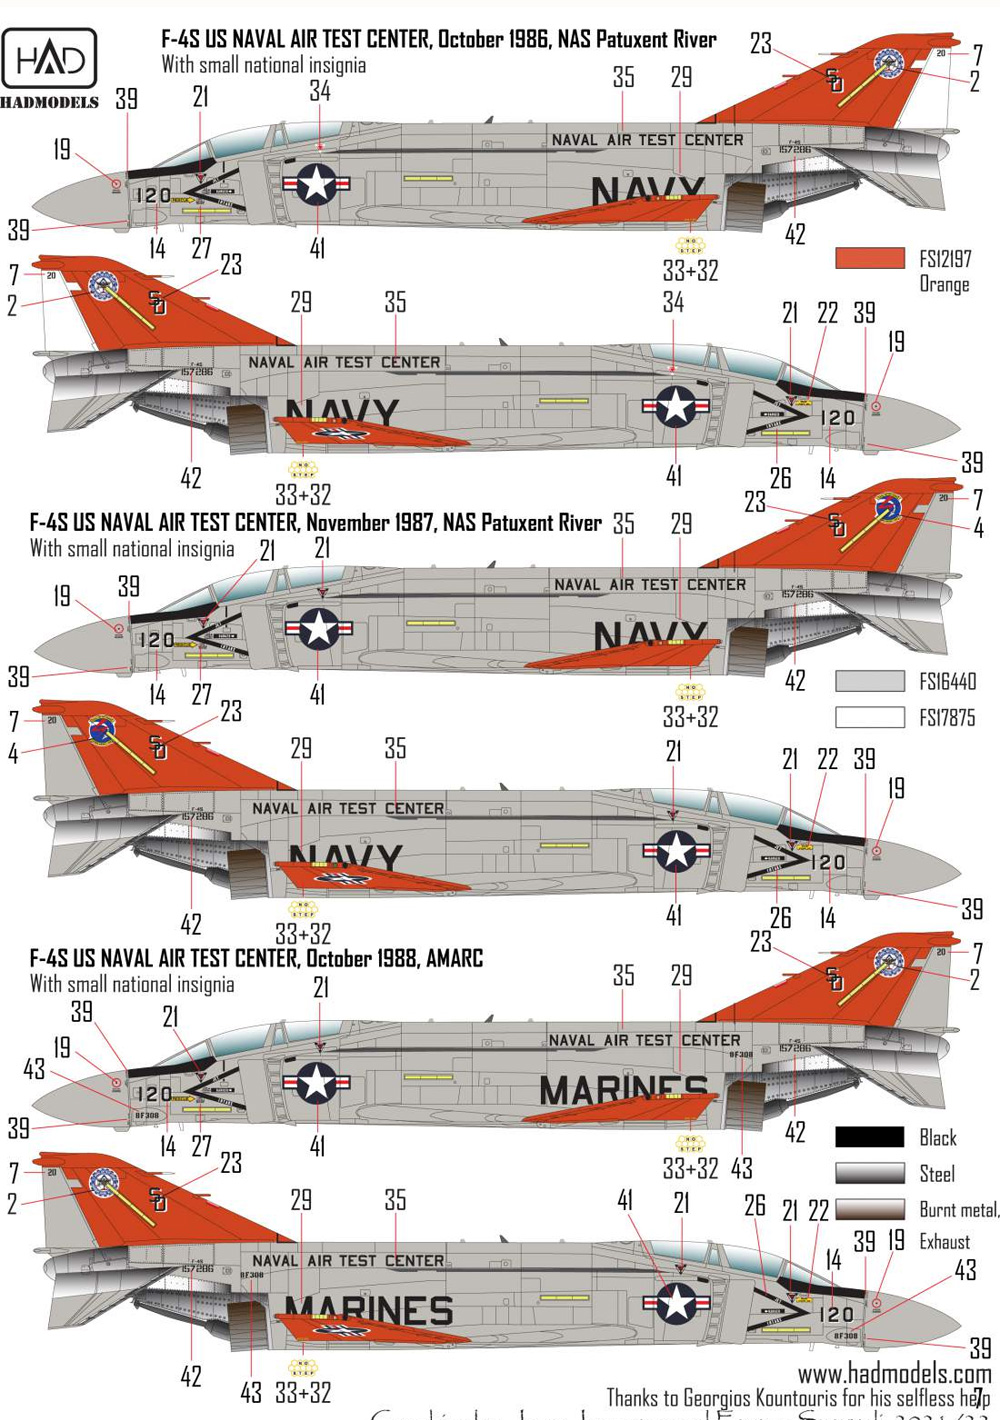 F-4S/J ファントム 2 海軍航空試験センター ファイナル・カウントダウン デカール デカール (HAD MODELS 1/72 デカール No.72255) 商品画像_4